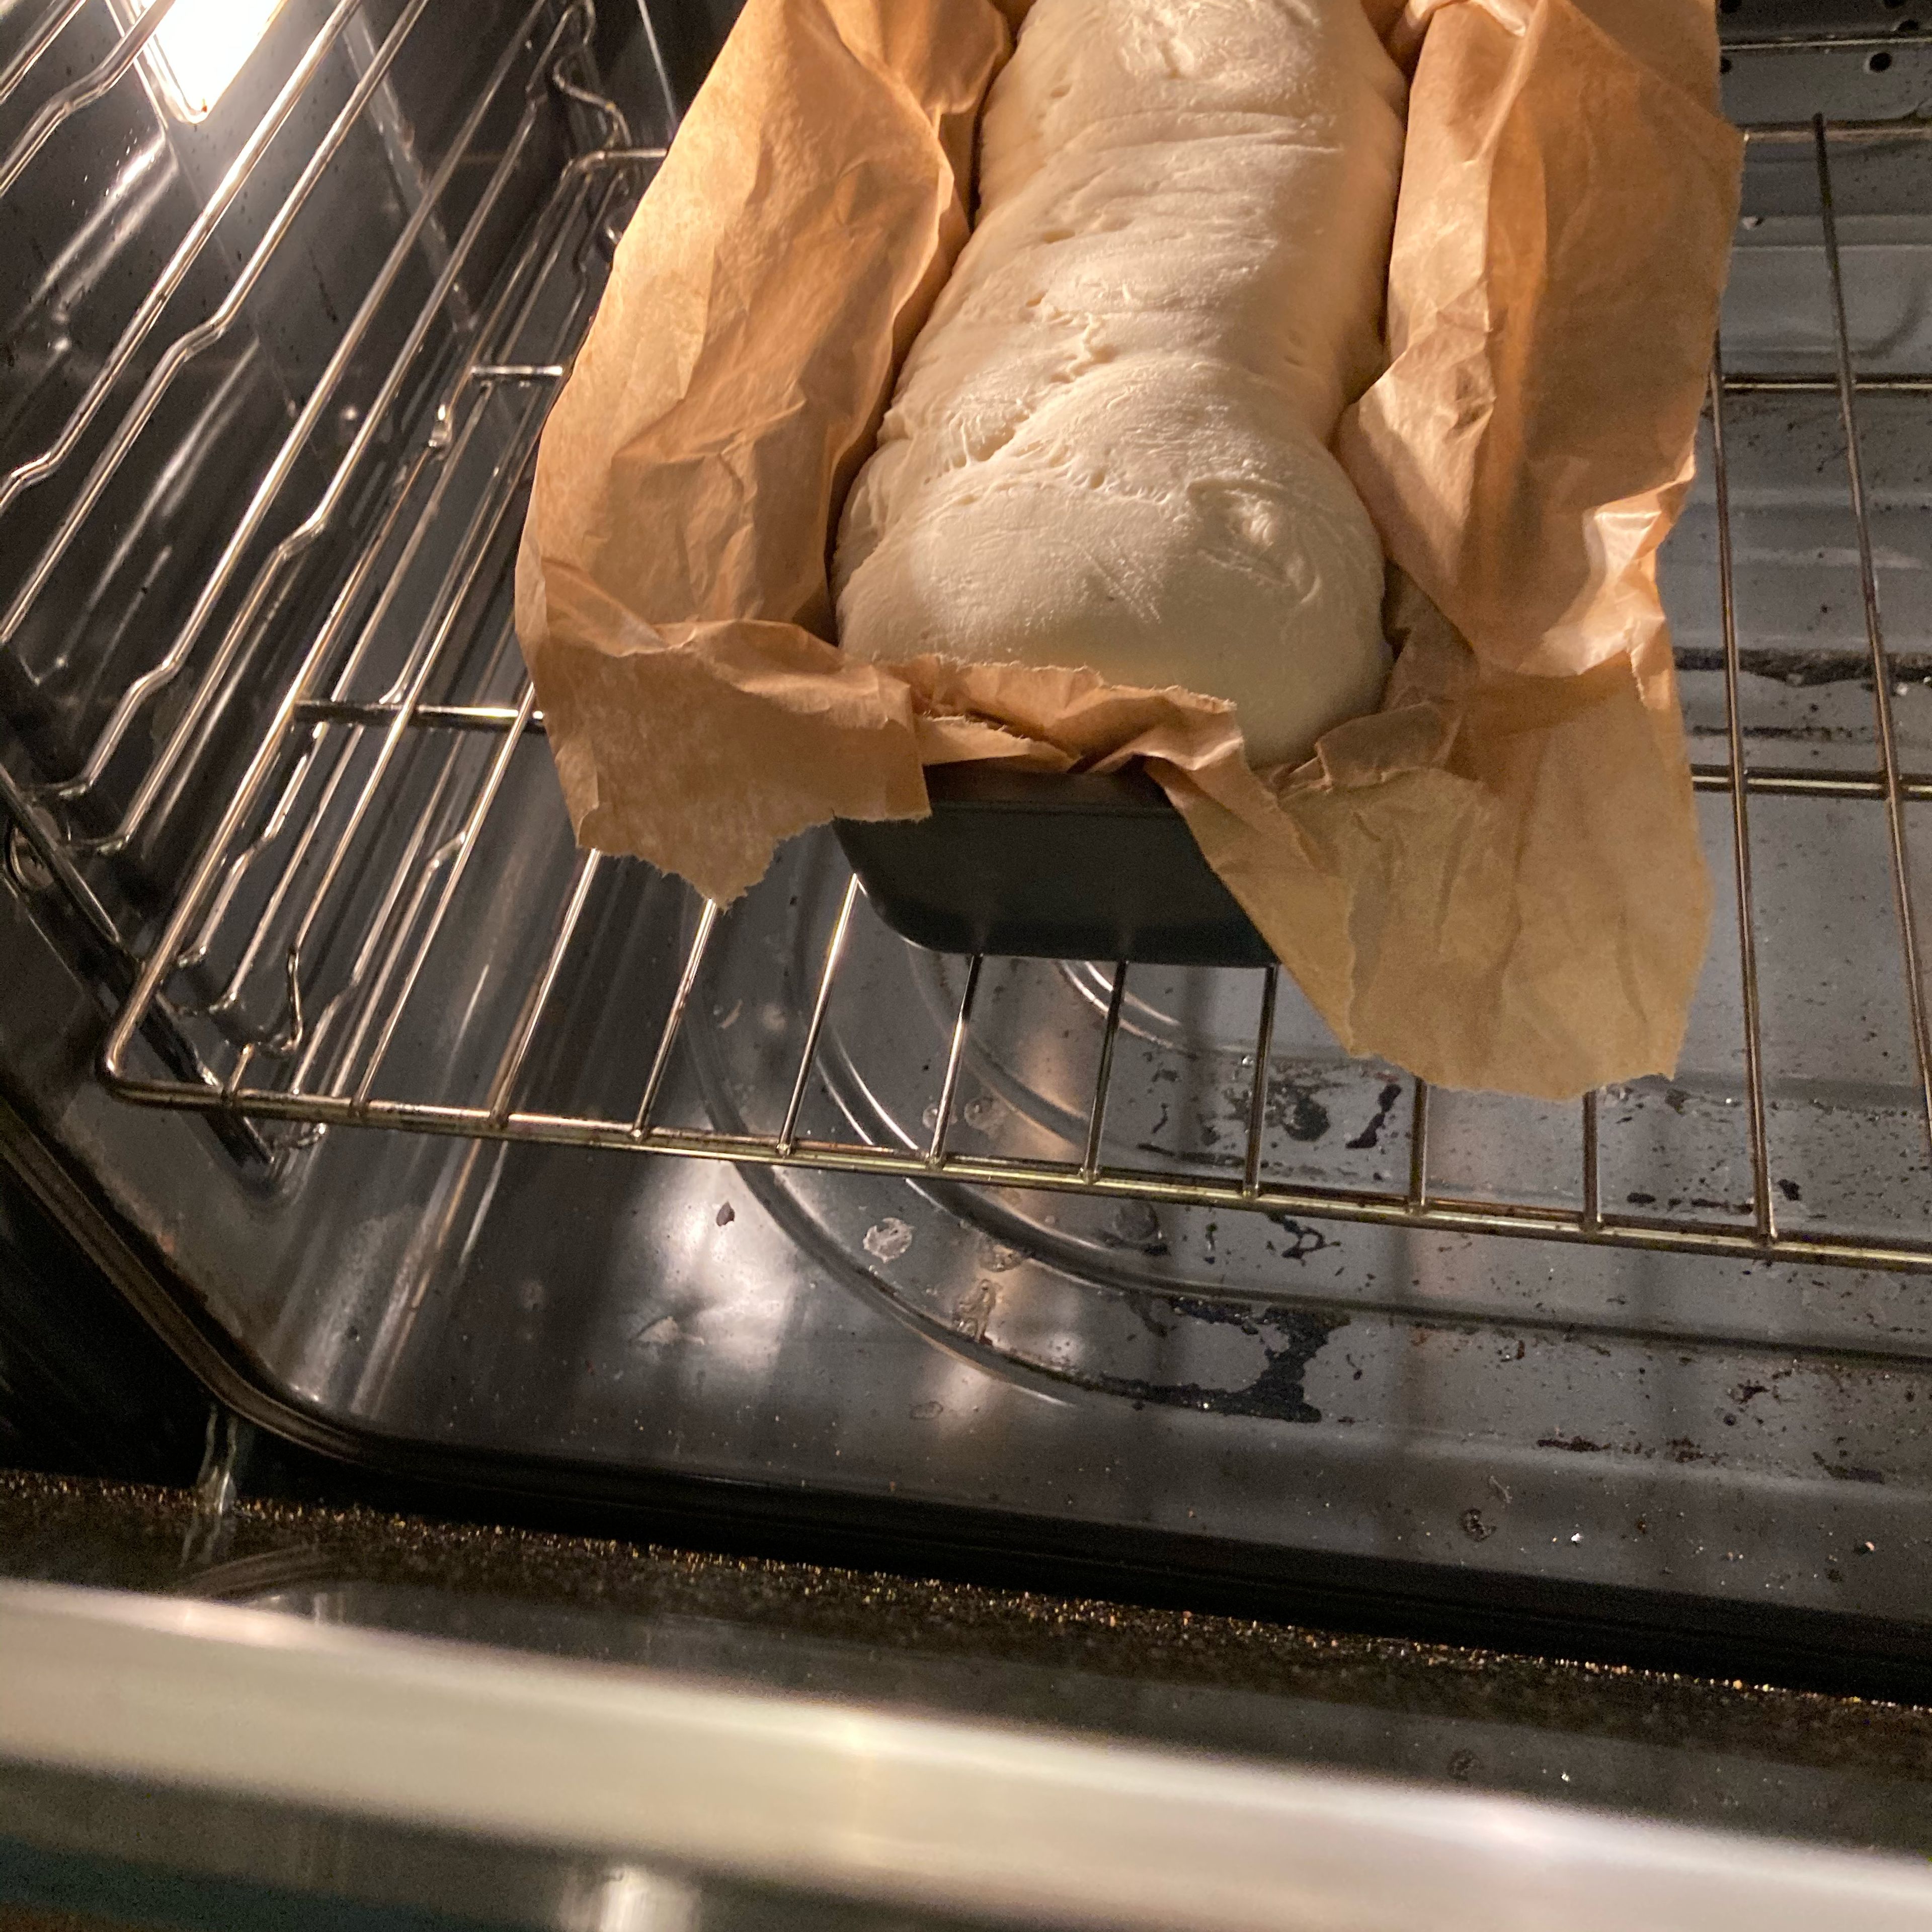 Dann den Brotteig bei 230 Grad Celsius im Ofen für 22 min backen